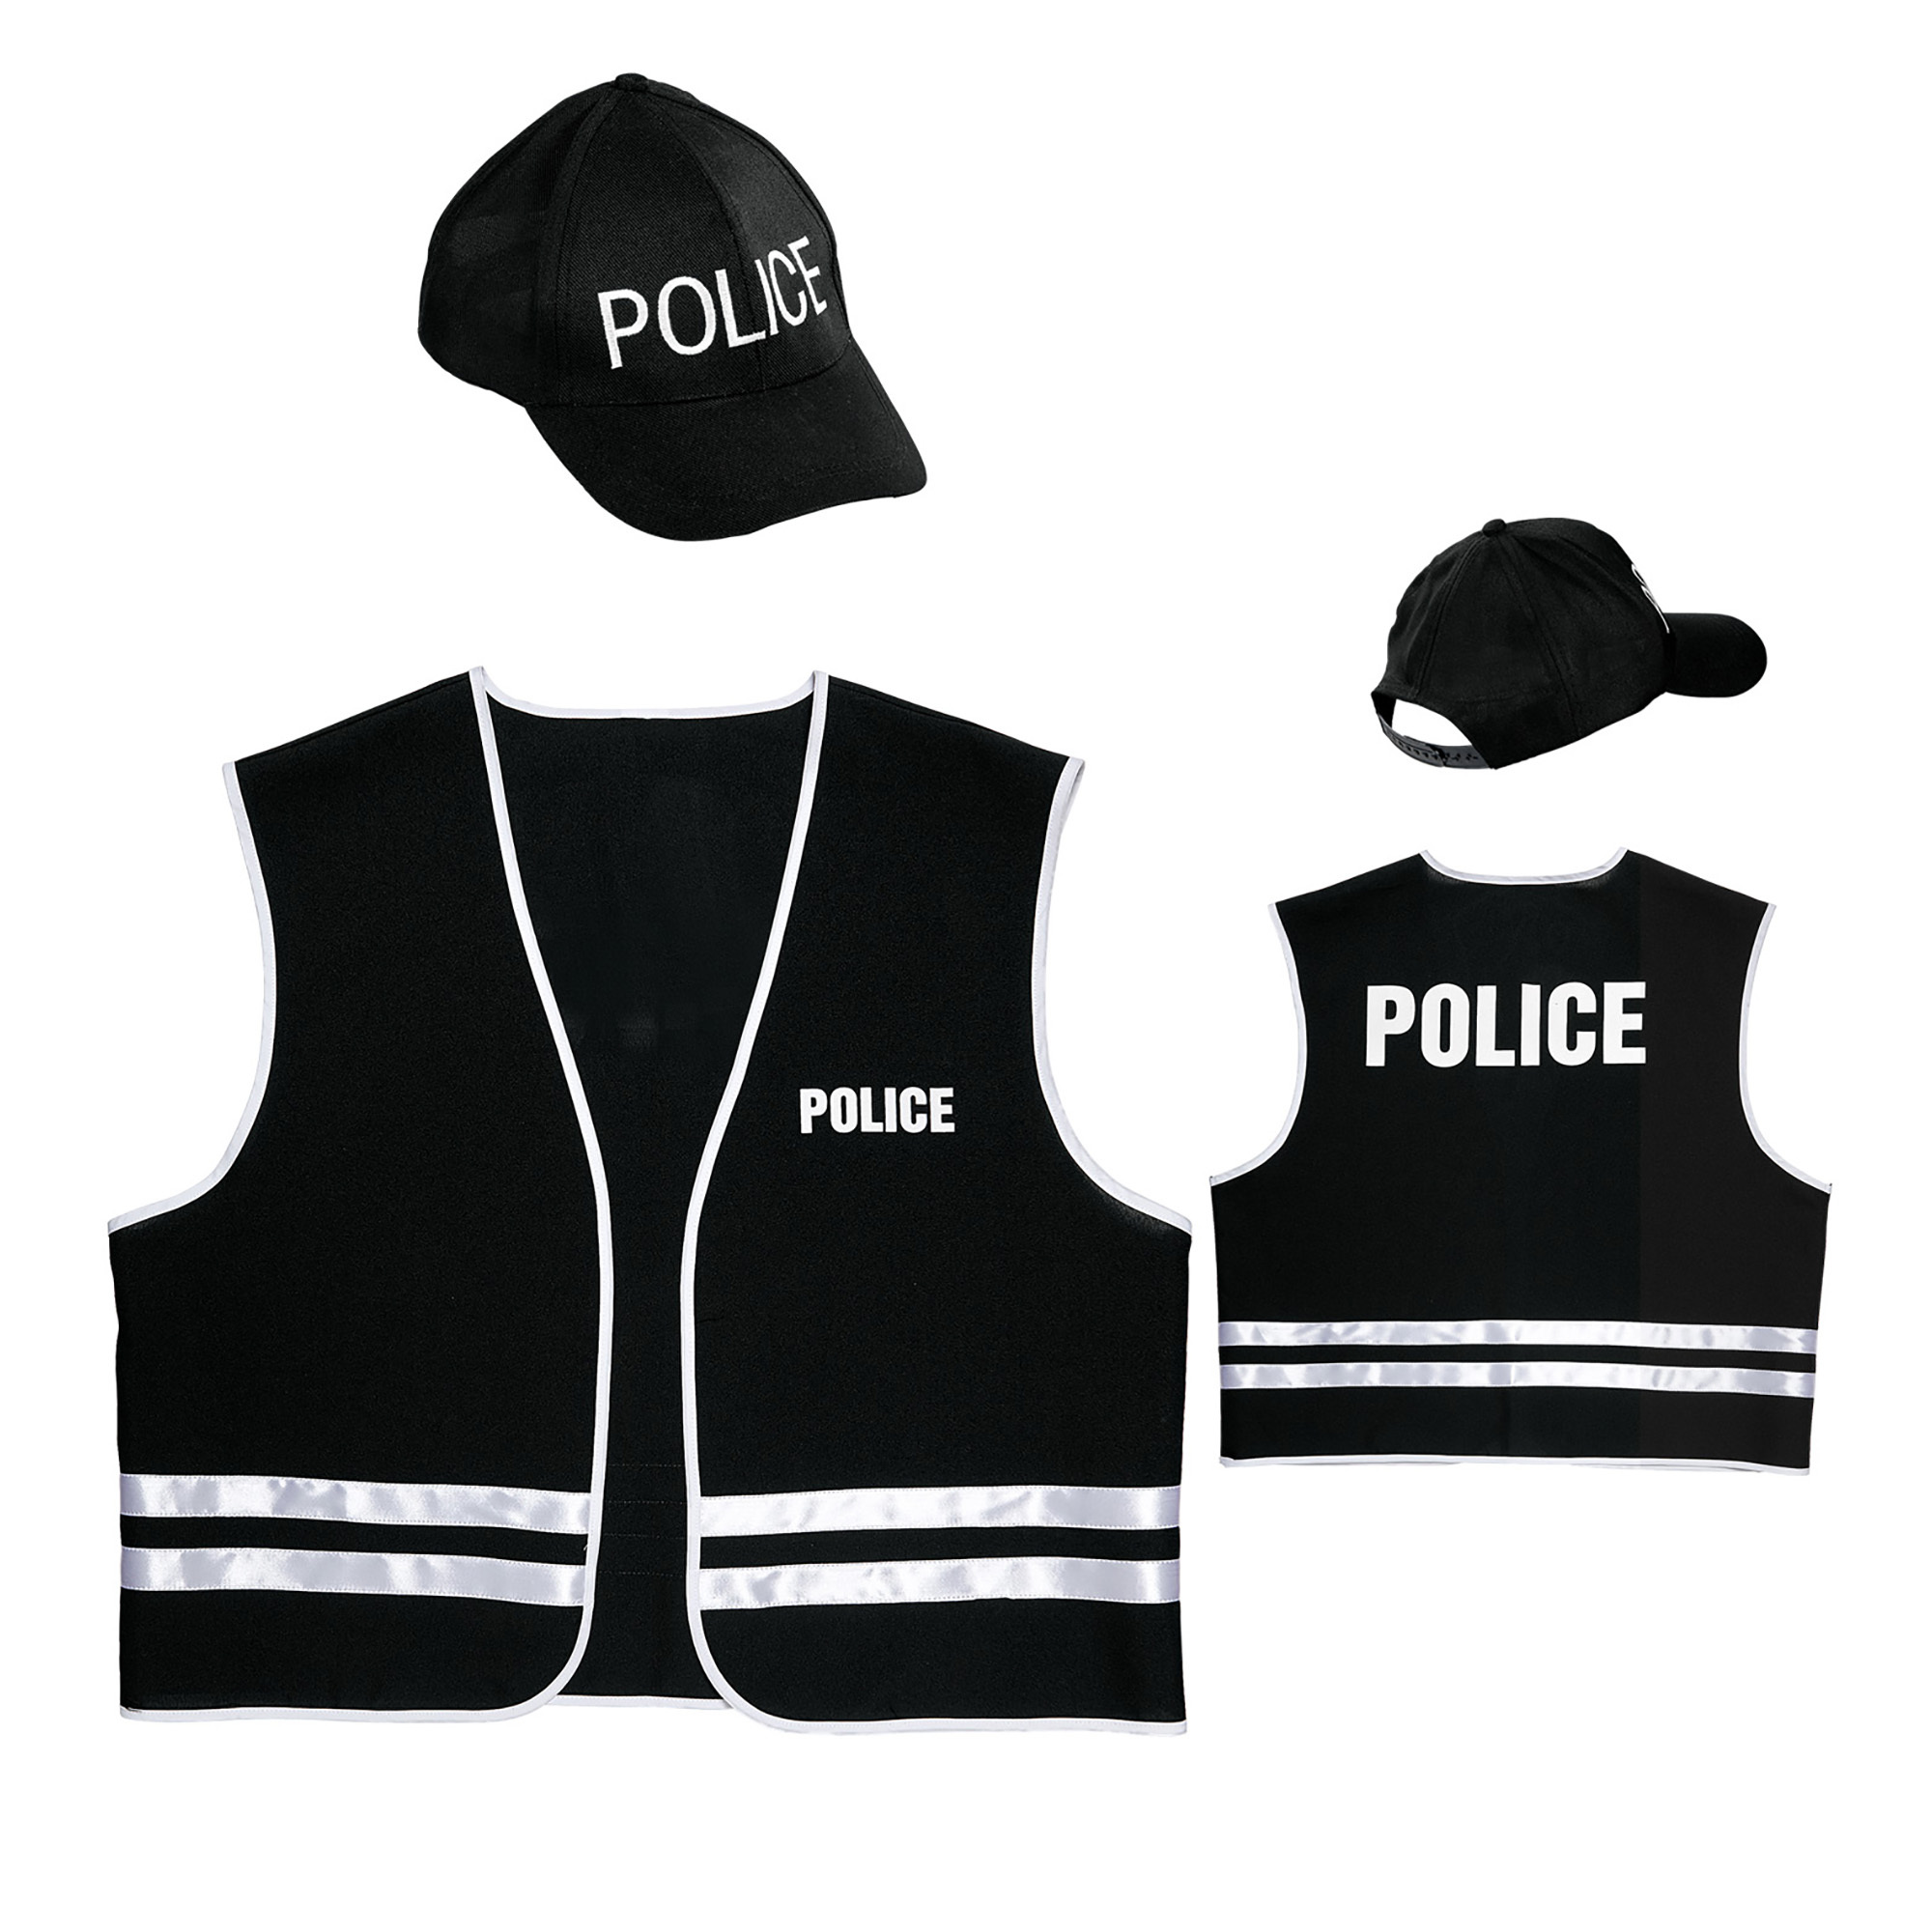 politie vest met cap volwassen police man